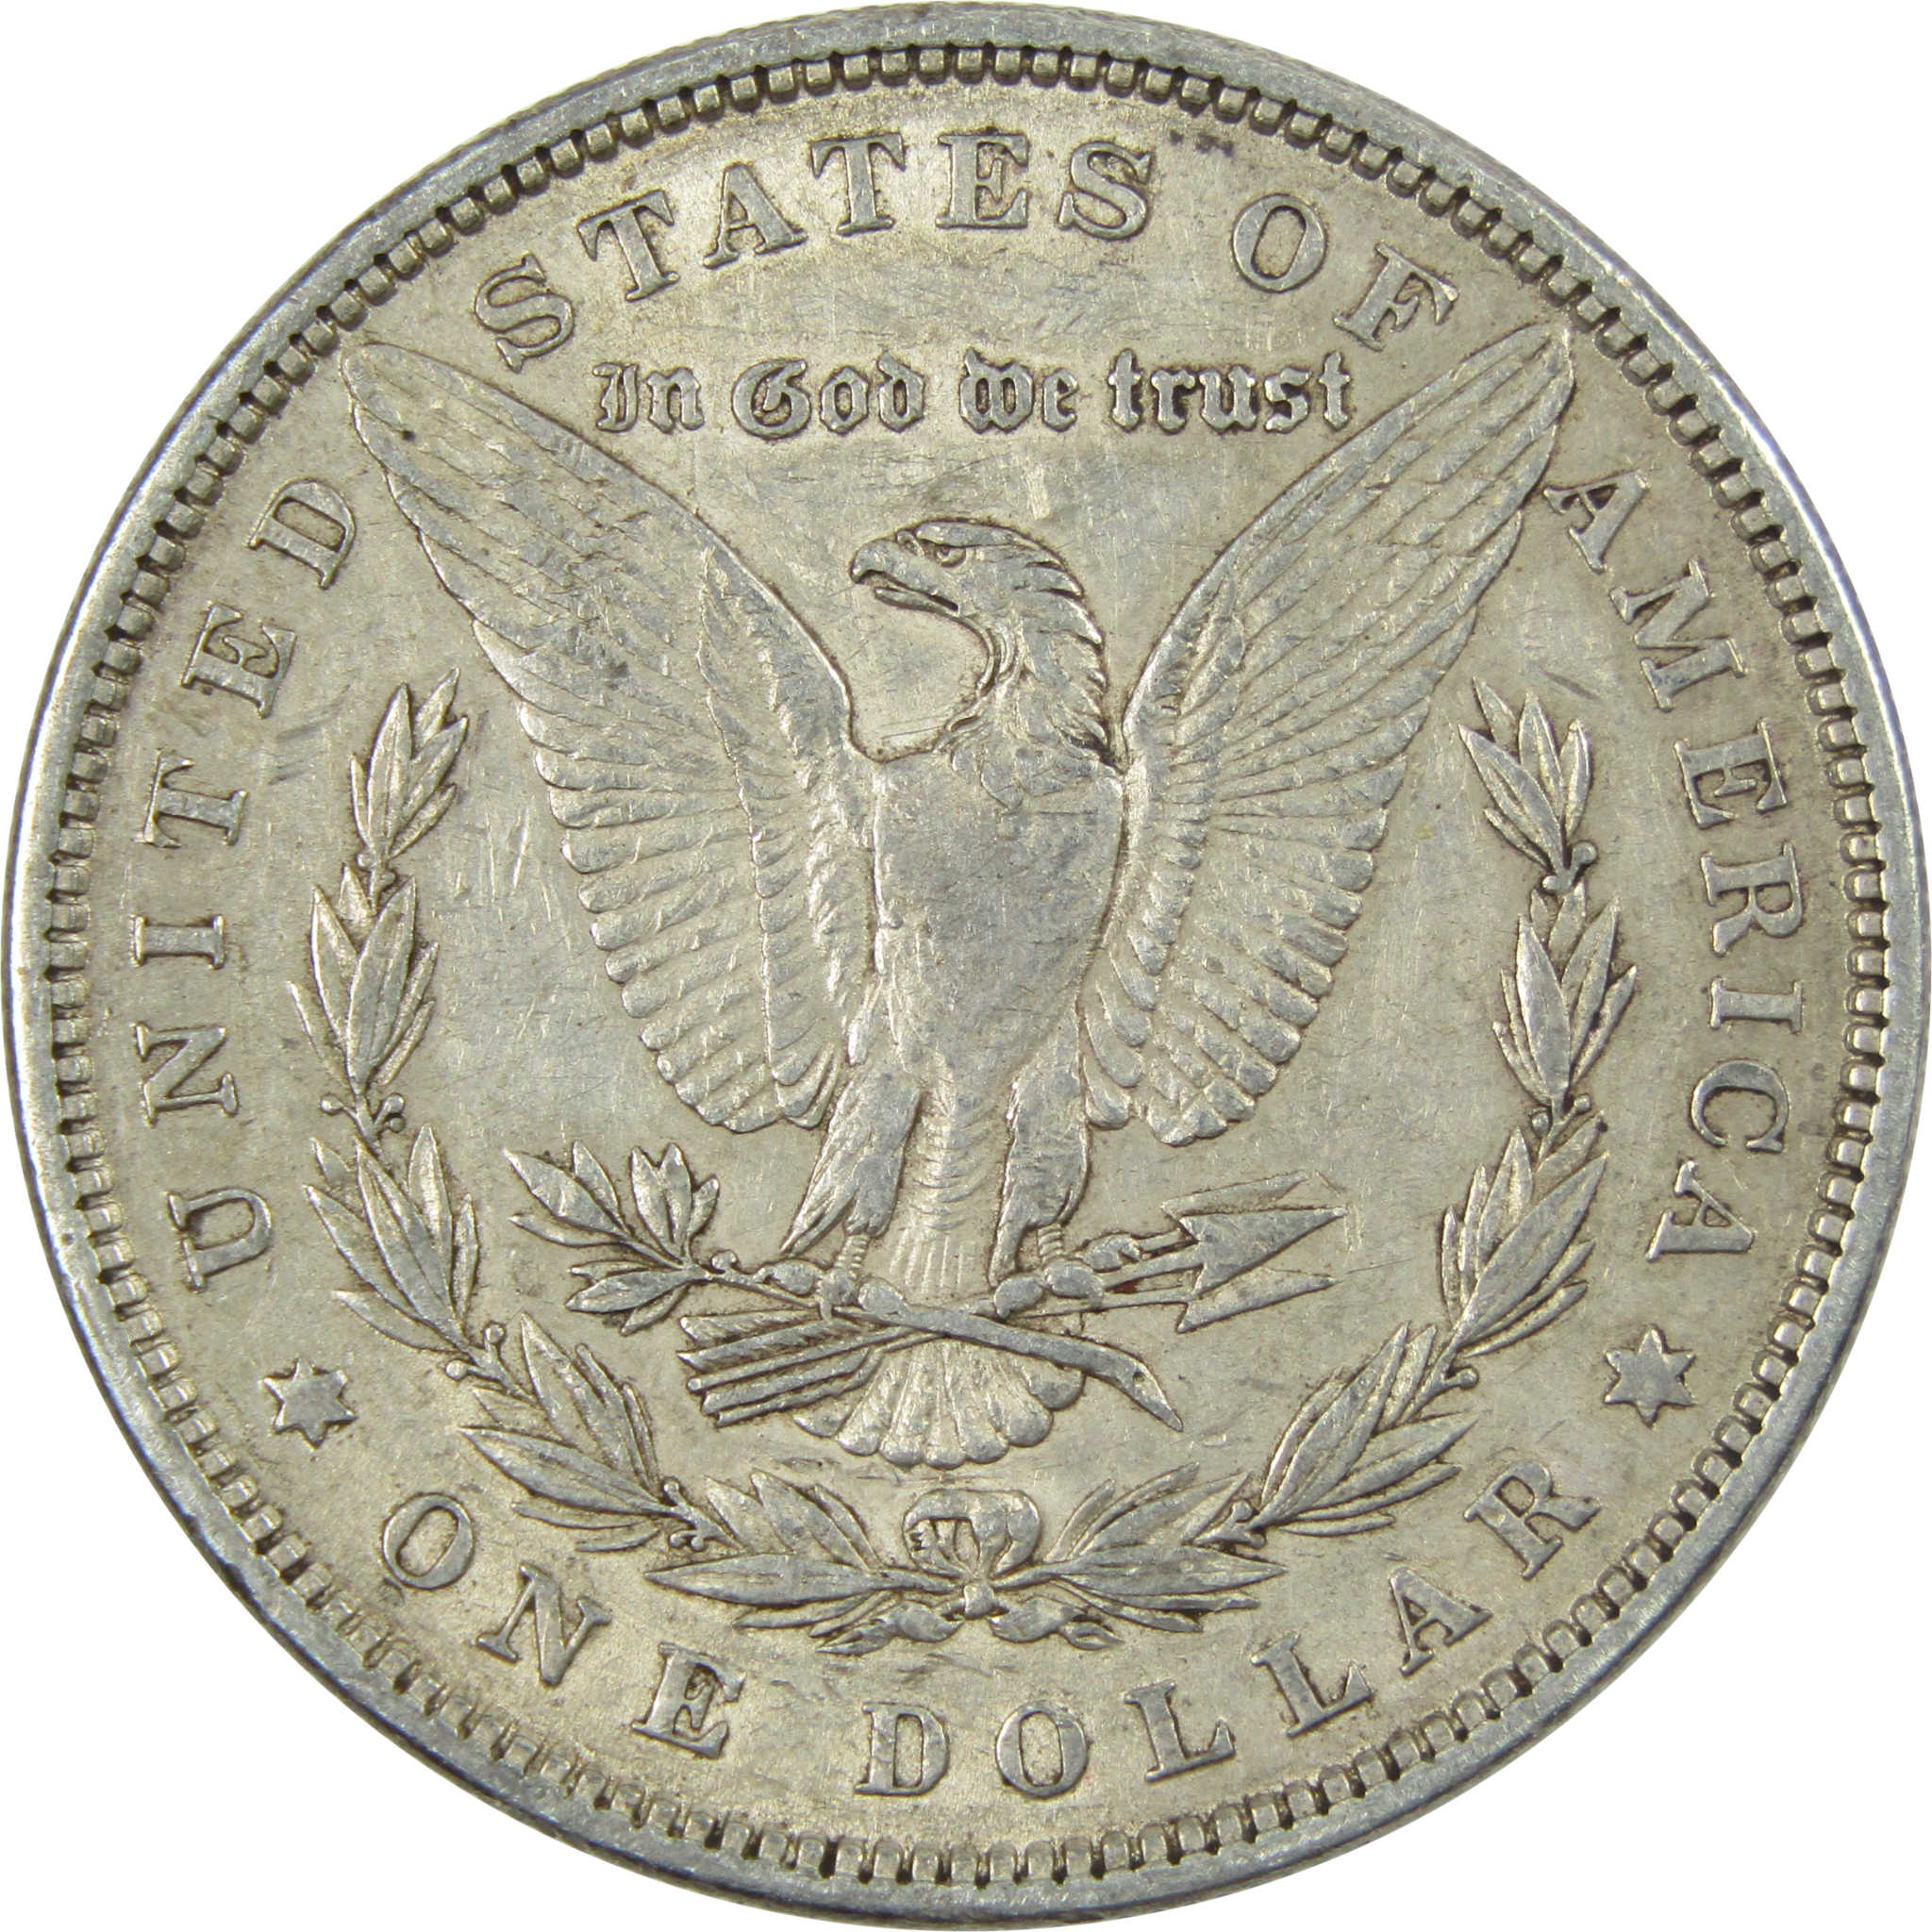 1879 Morgan Dollar XF EF Extremely Fine 90% Silver $1 US Coin Collectible - Morgan coin - Morgan silver dollar - Morgan silver dollar for sale - Profile Coins &amp; Collectibles